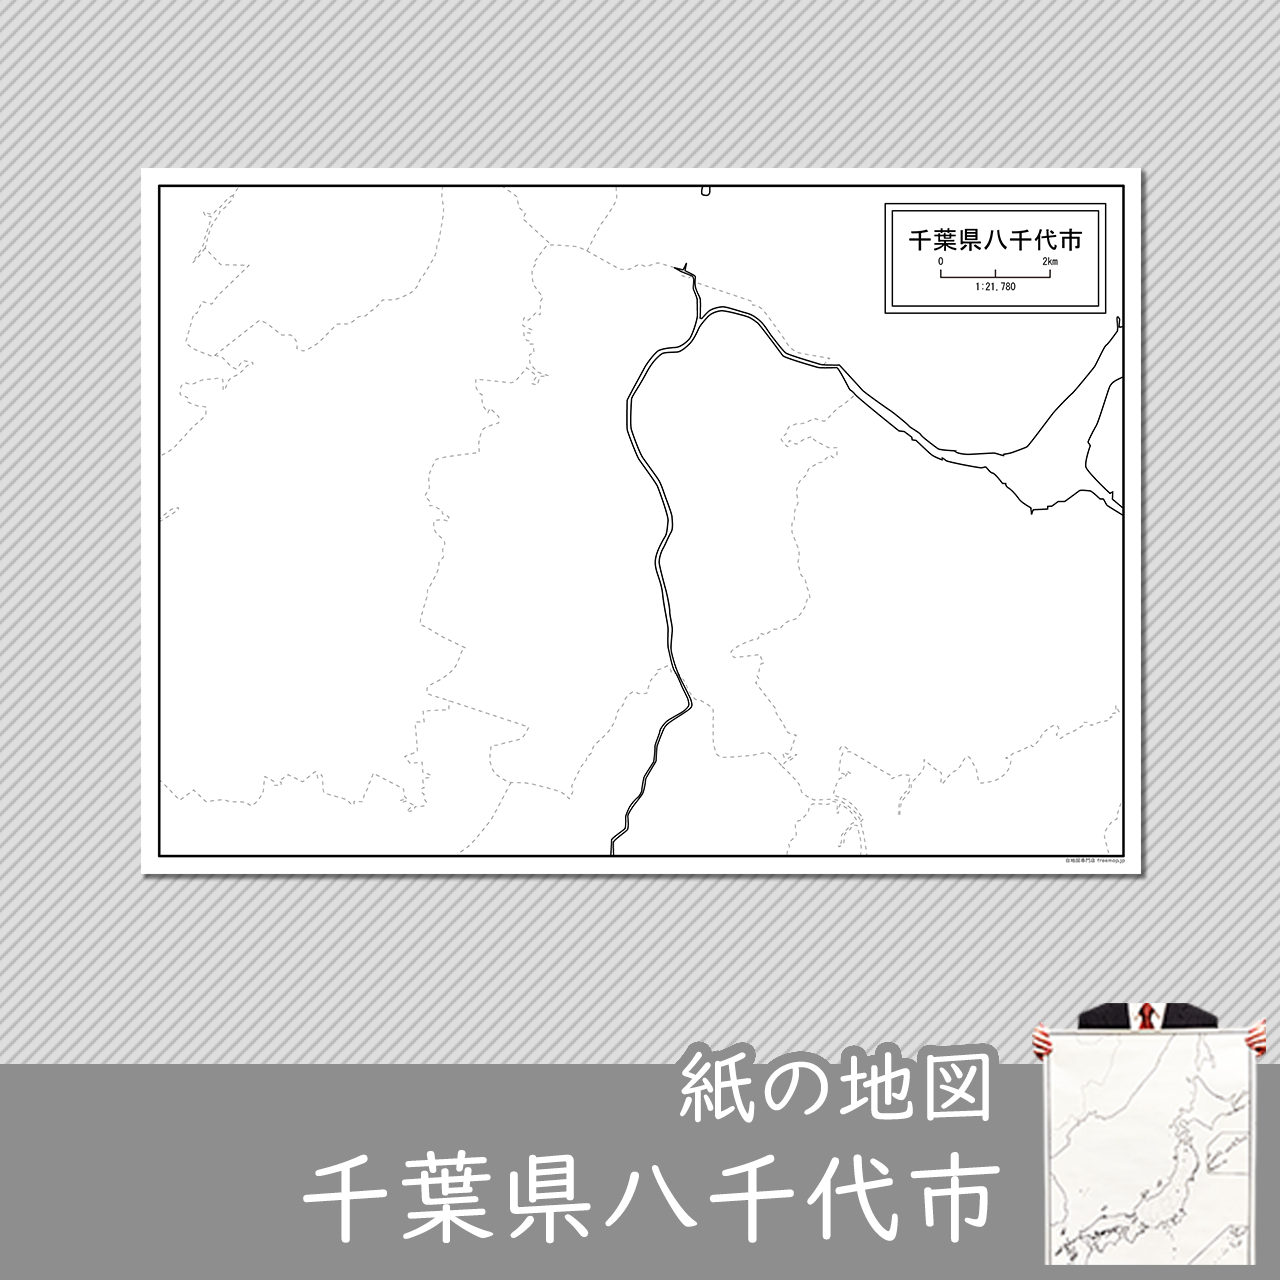 八千代市の紙の白地図のサムネイル